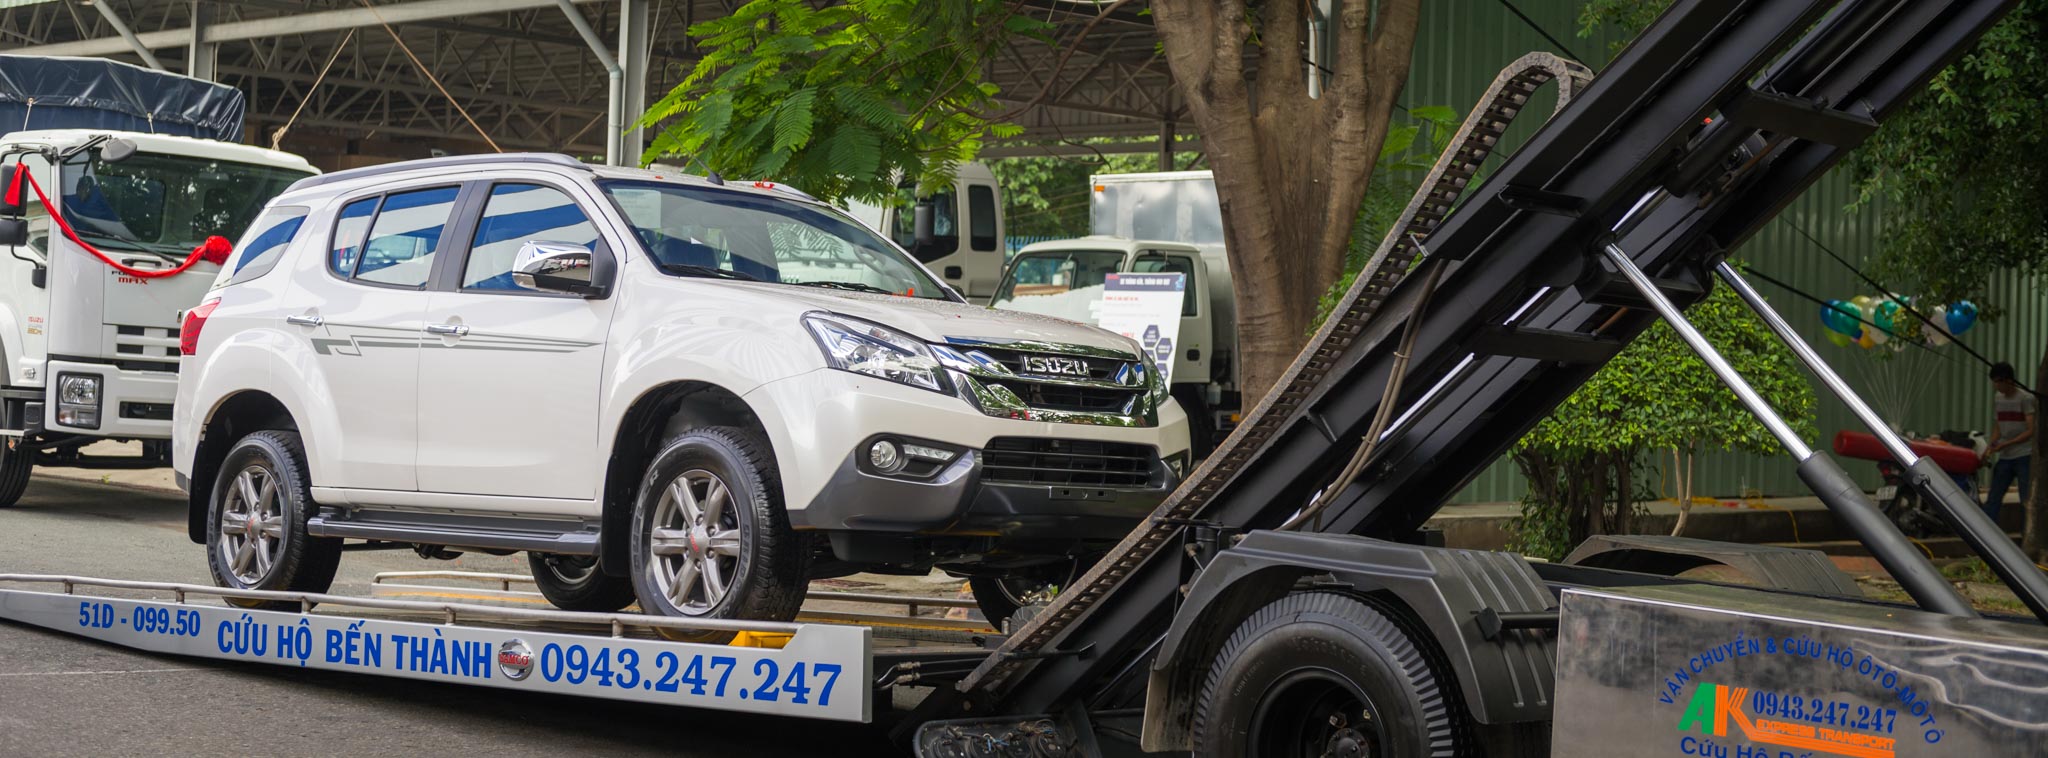 ISUZU Việt Nam gia nhập thị trường xe chuyên dụng, nhiều dòng sản phẩm hay